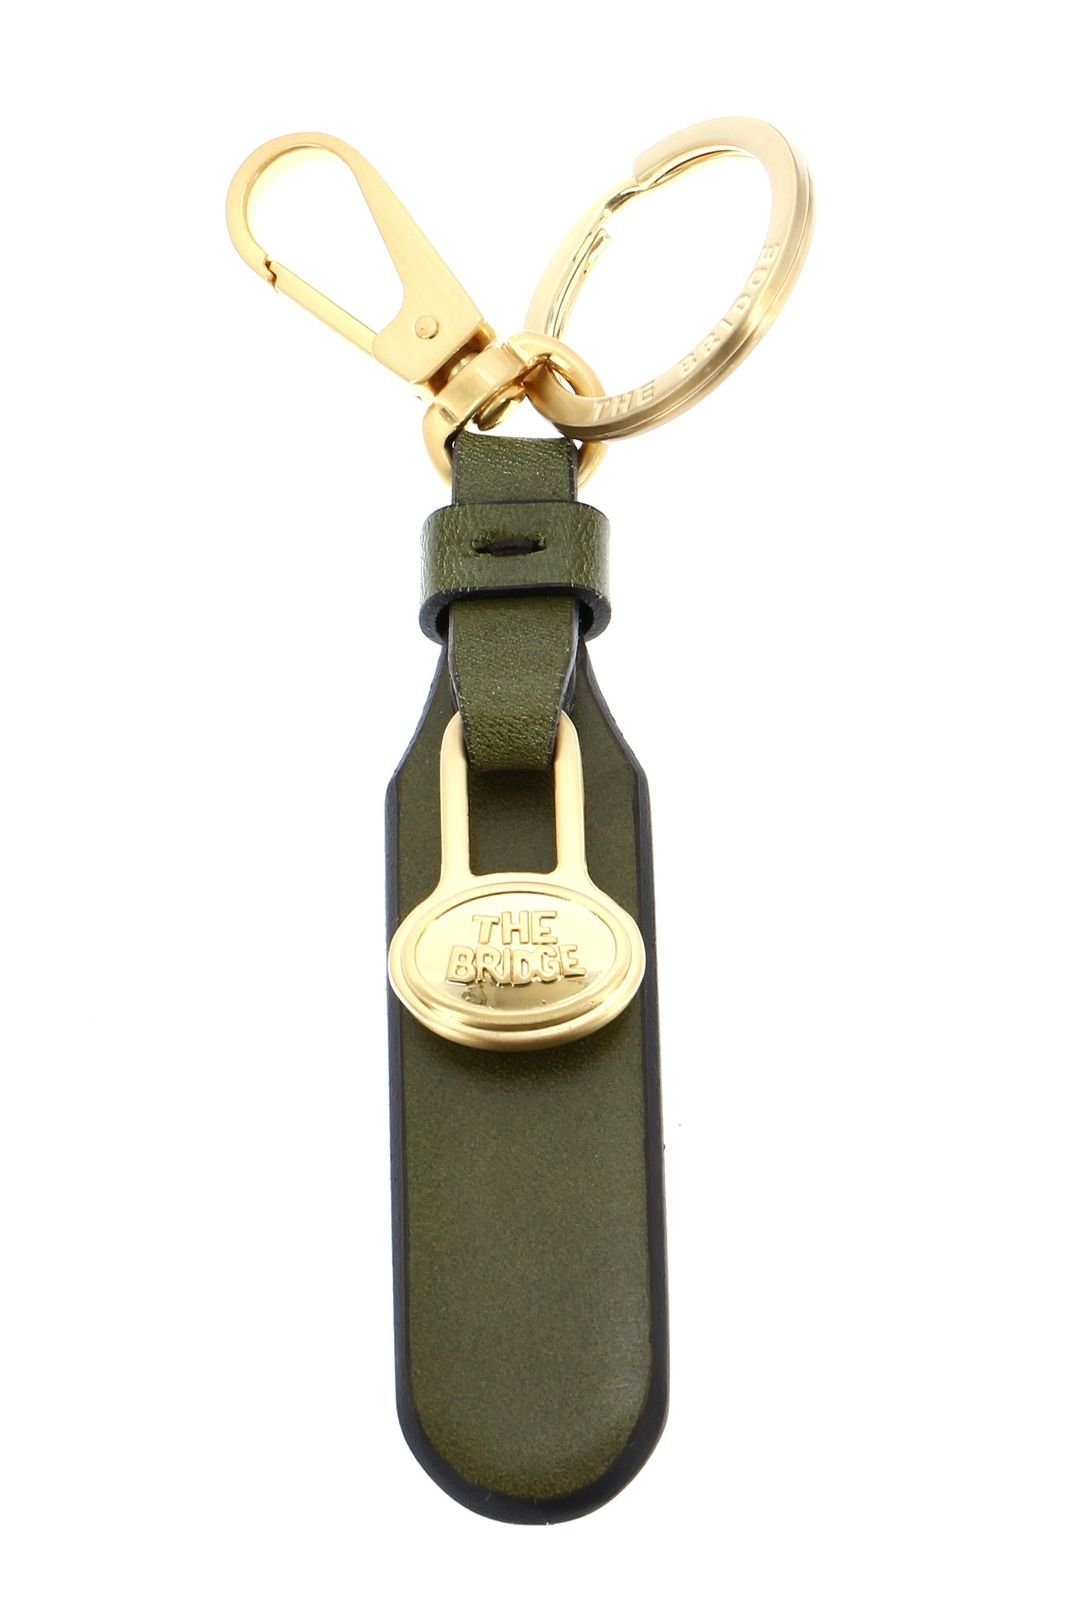 / Verde Duccio THE Oro Fico Schlüsselanhänger BRIDGE